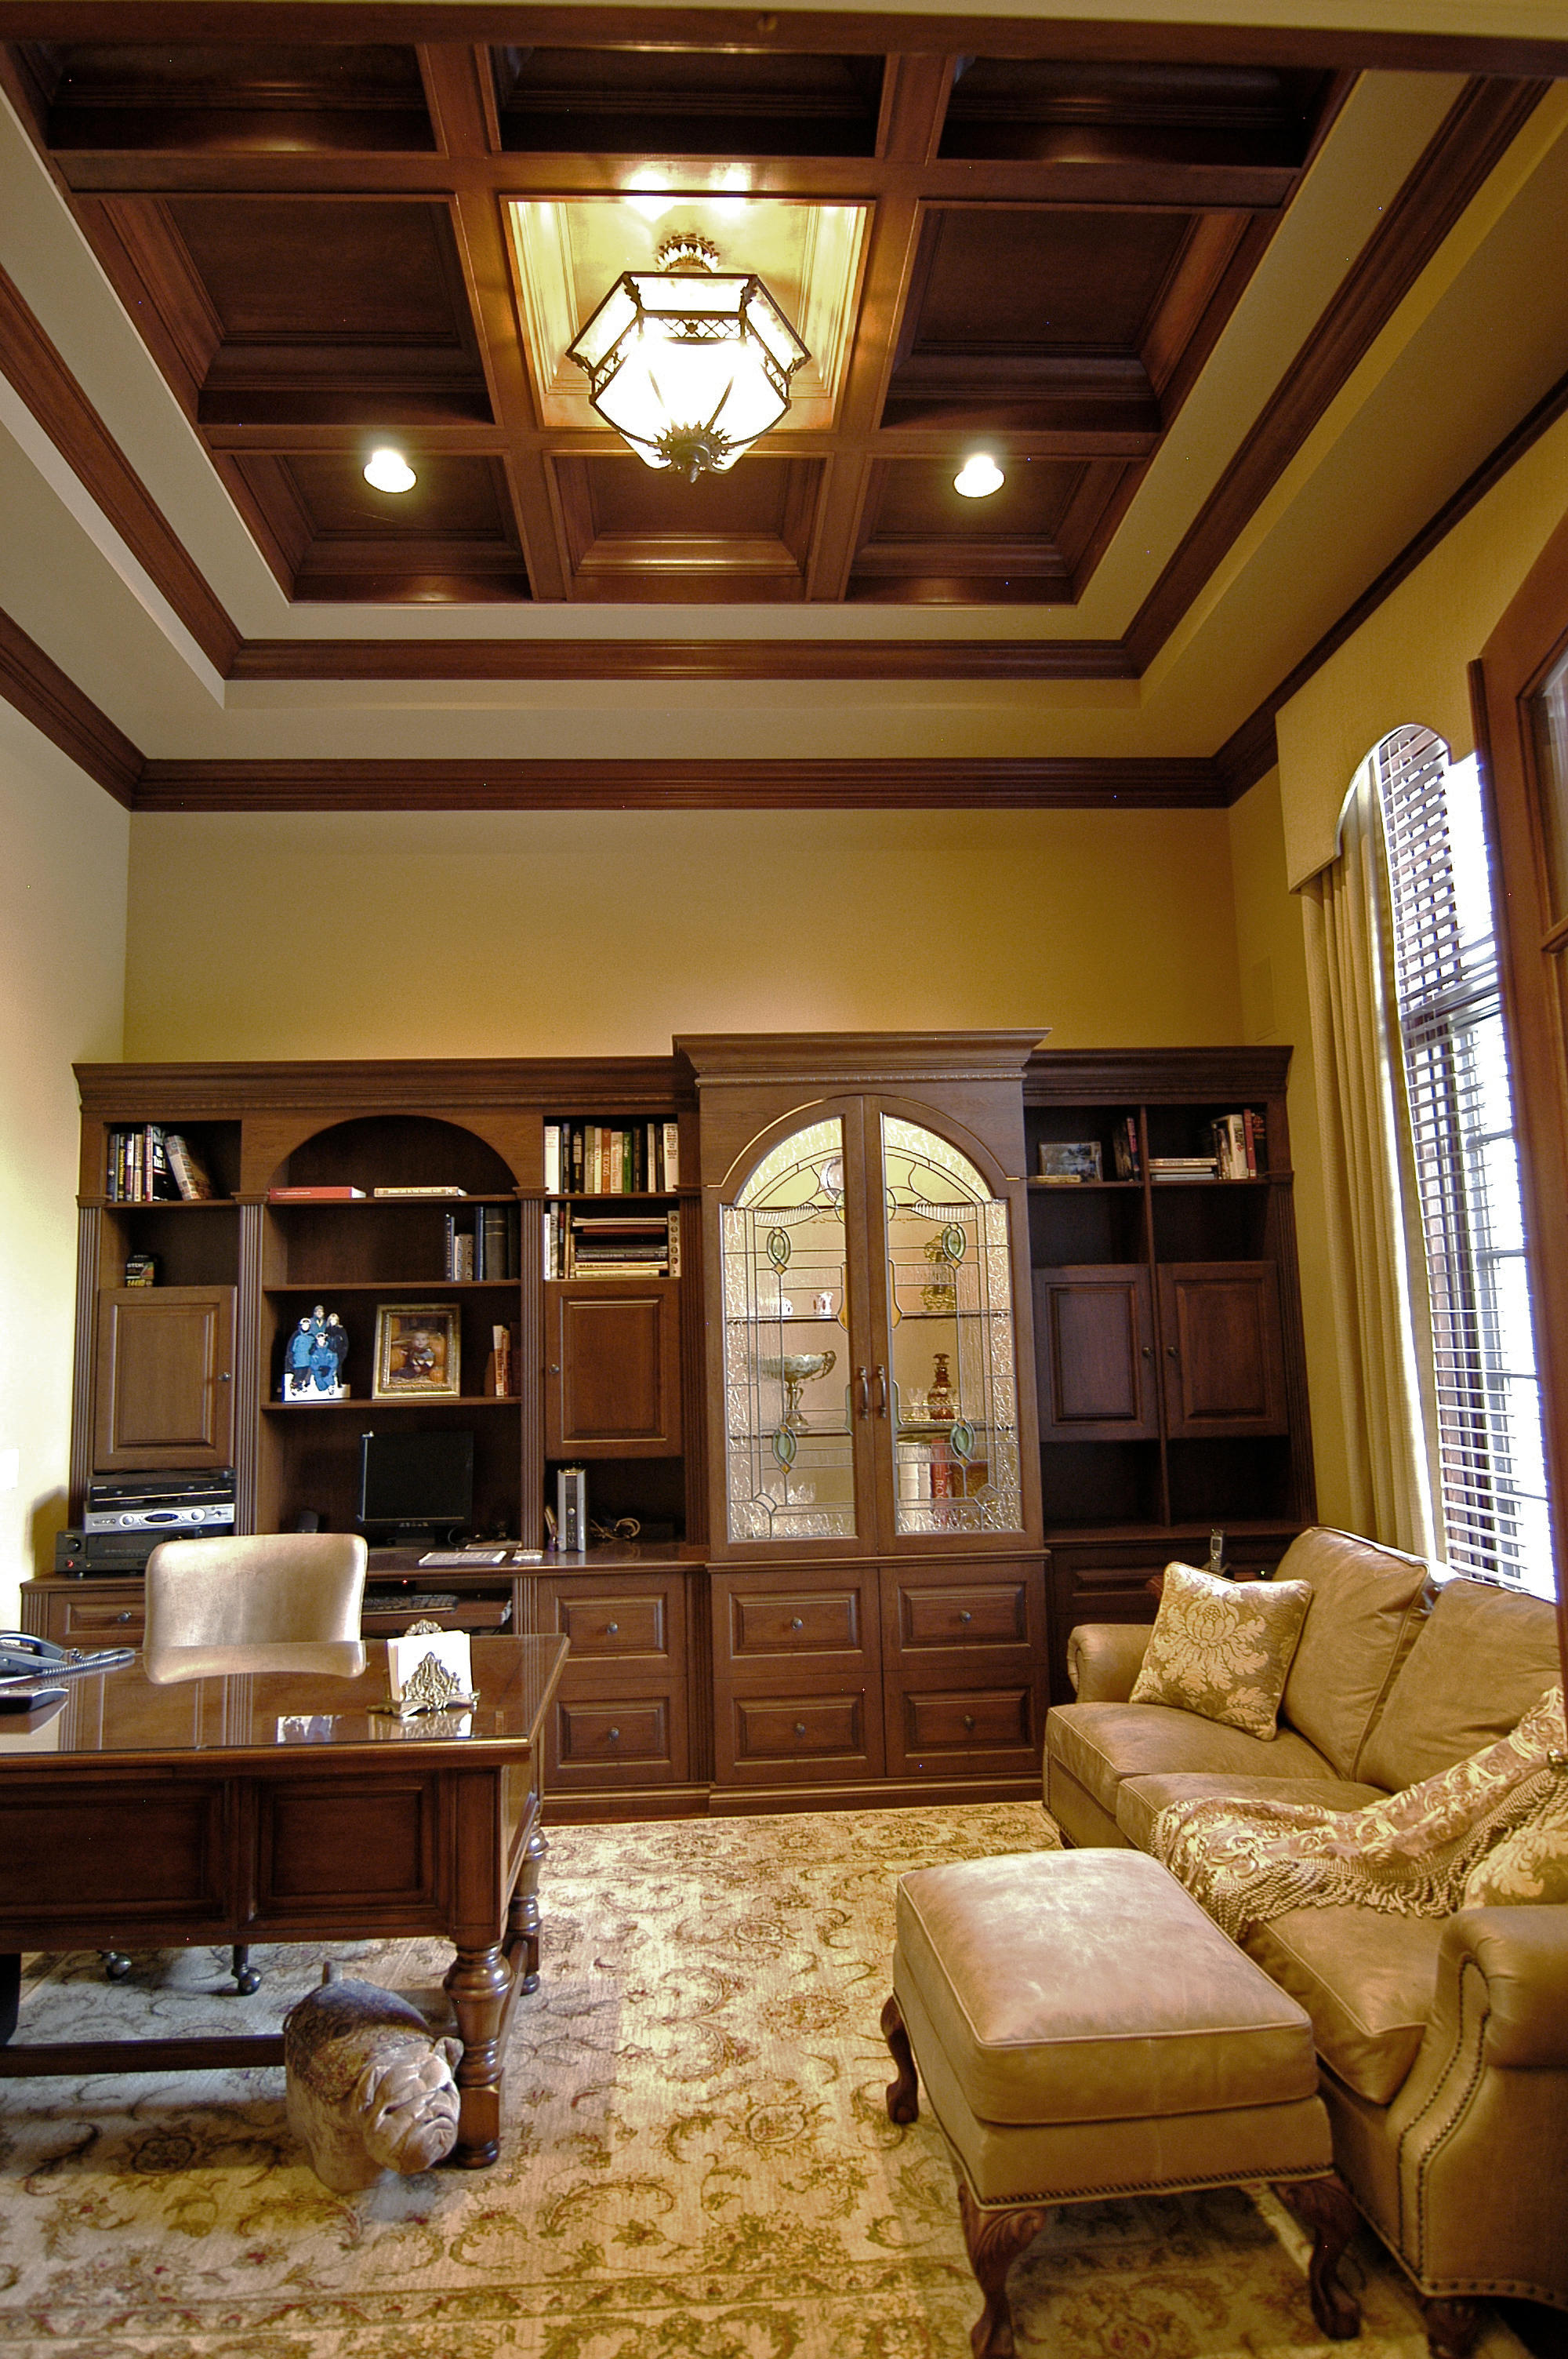 Foran Interior Design Photo